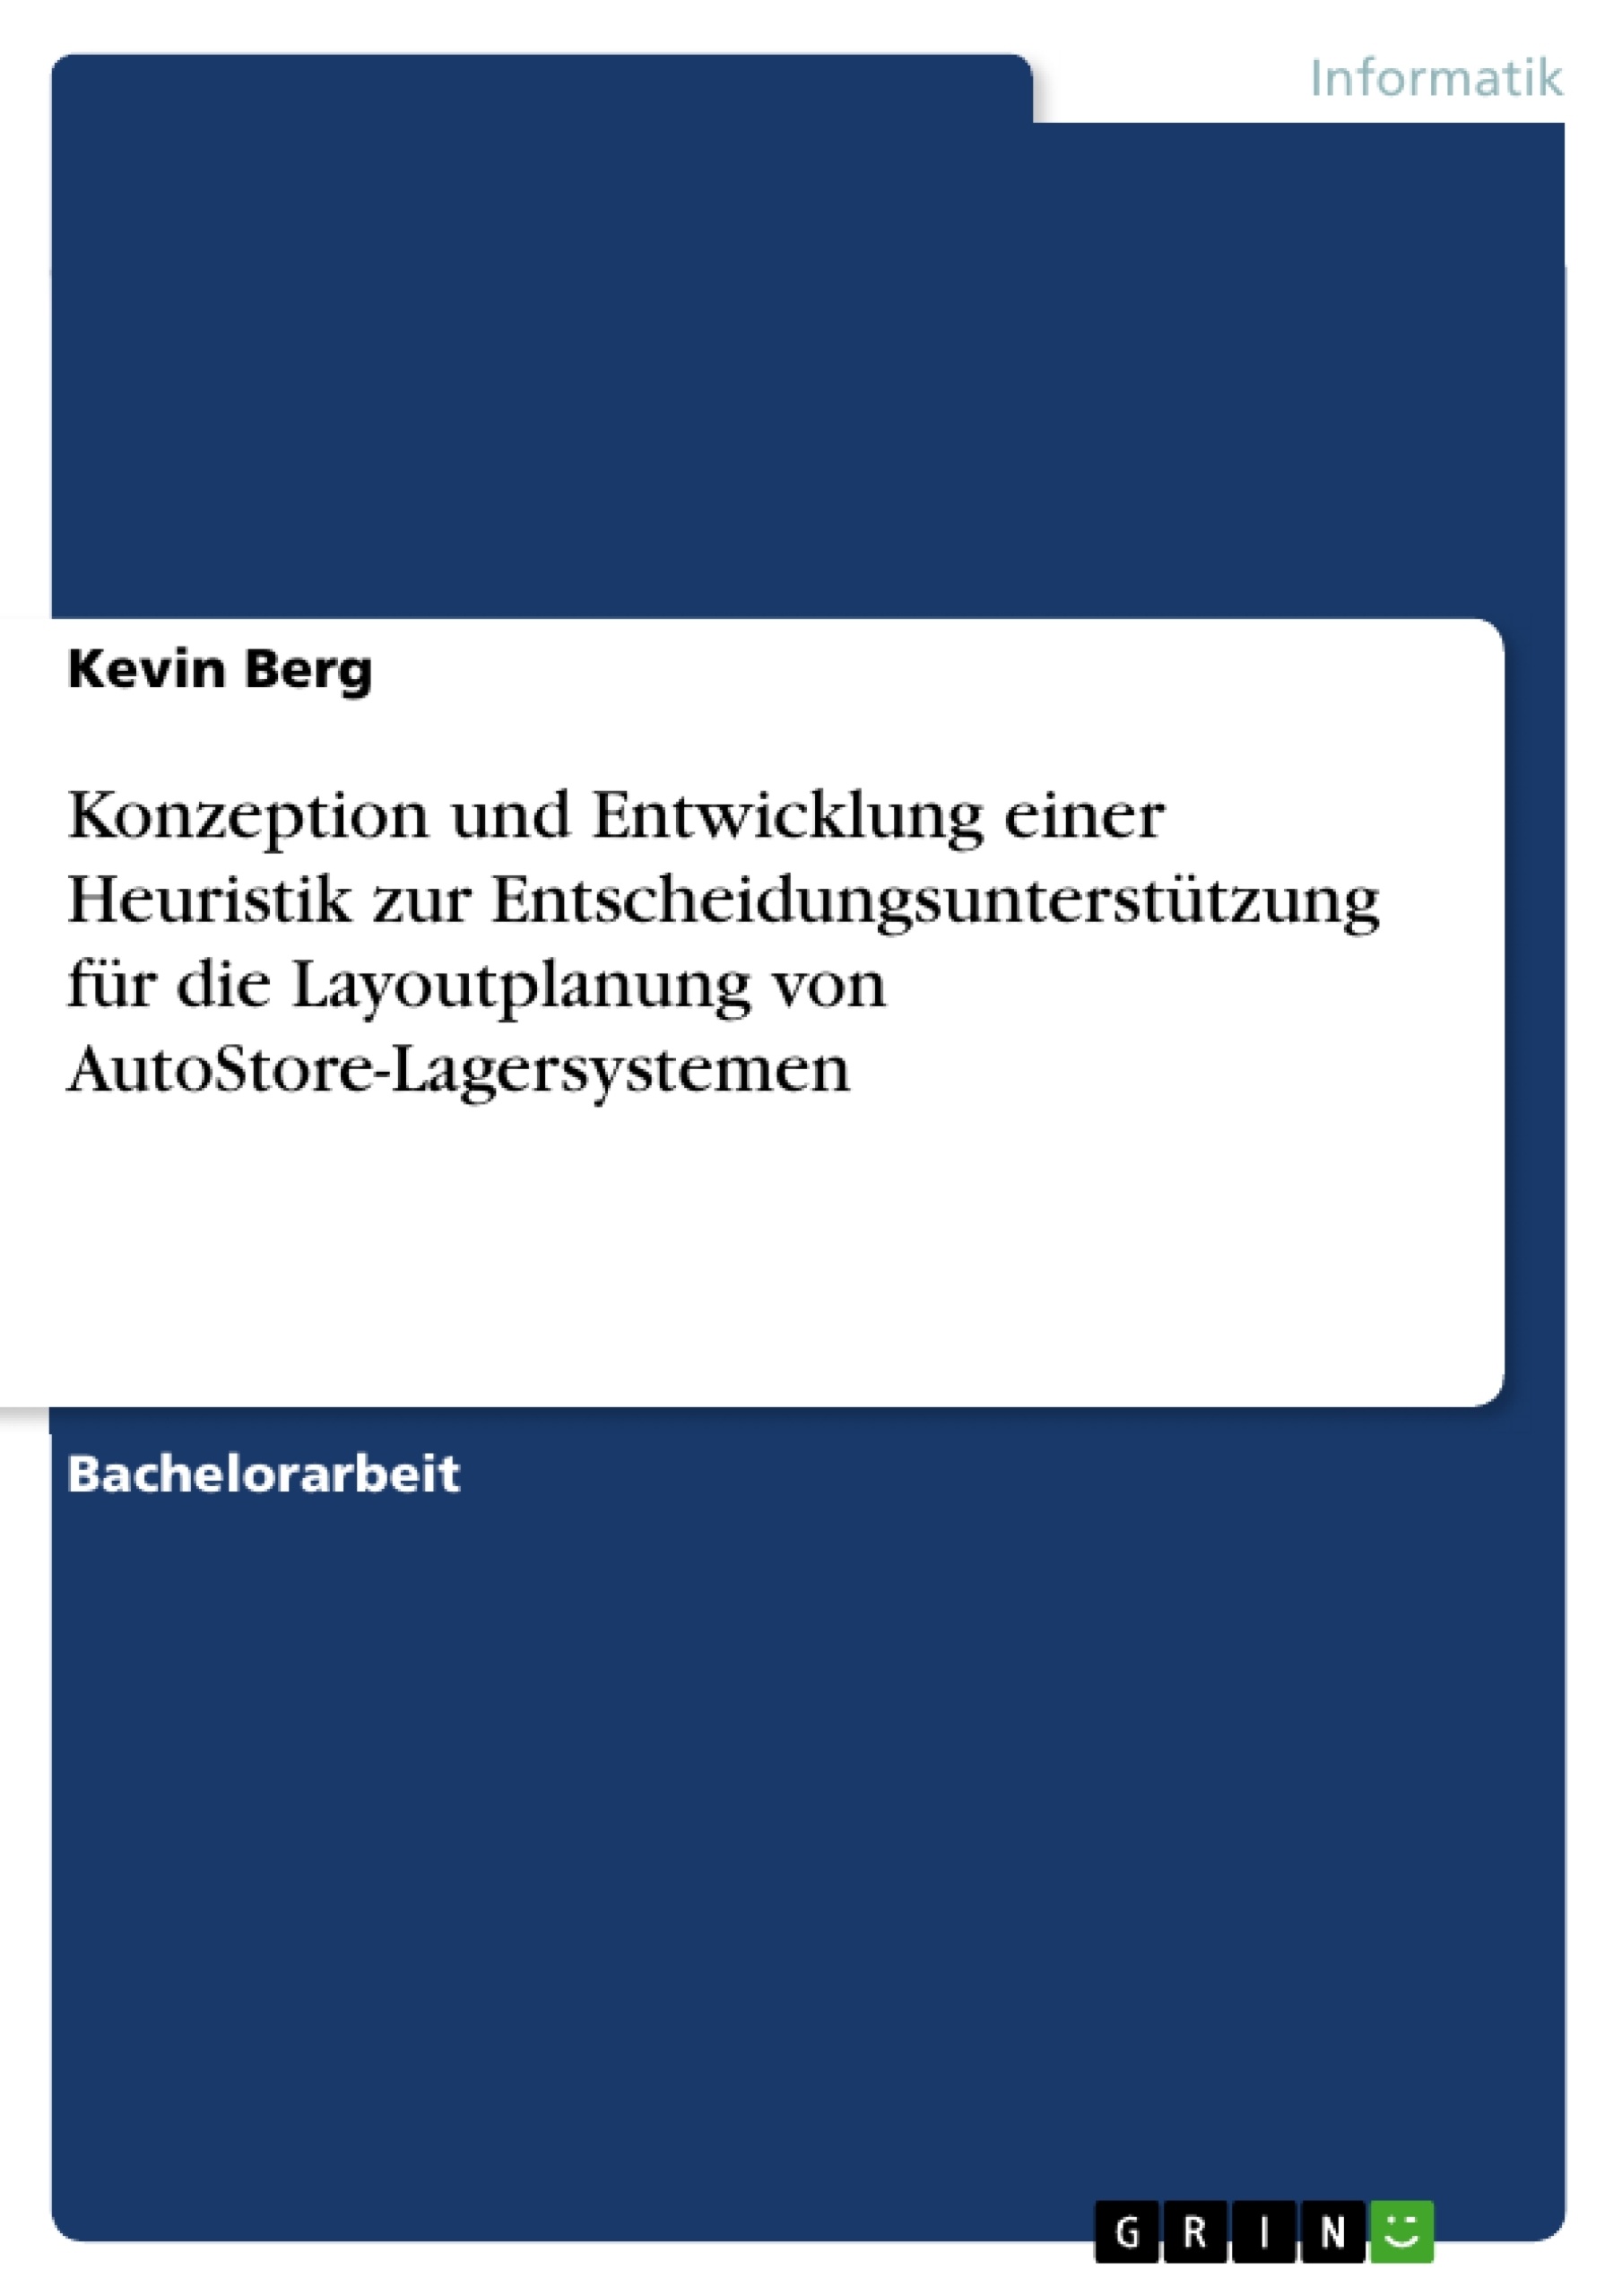 Título: Konzeption und Entwicklung einer Heuristik zur Entscheidungsunterstützung für die Layoutplanung von AutoStore-Lagersystemen